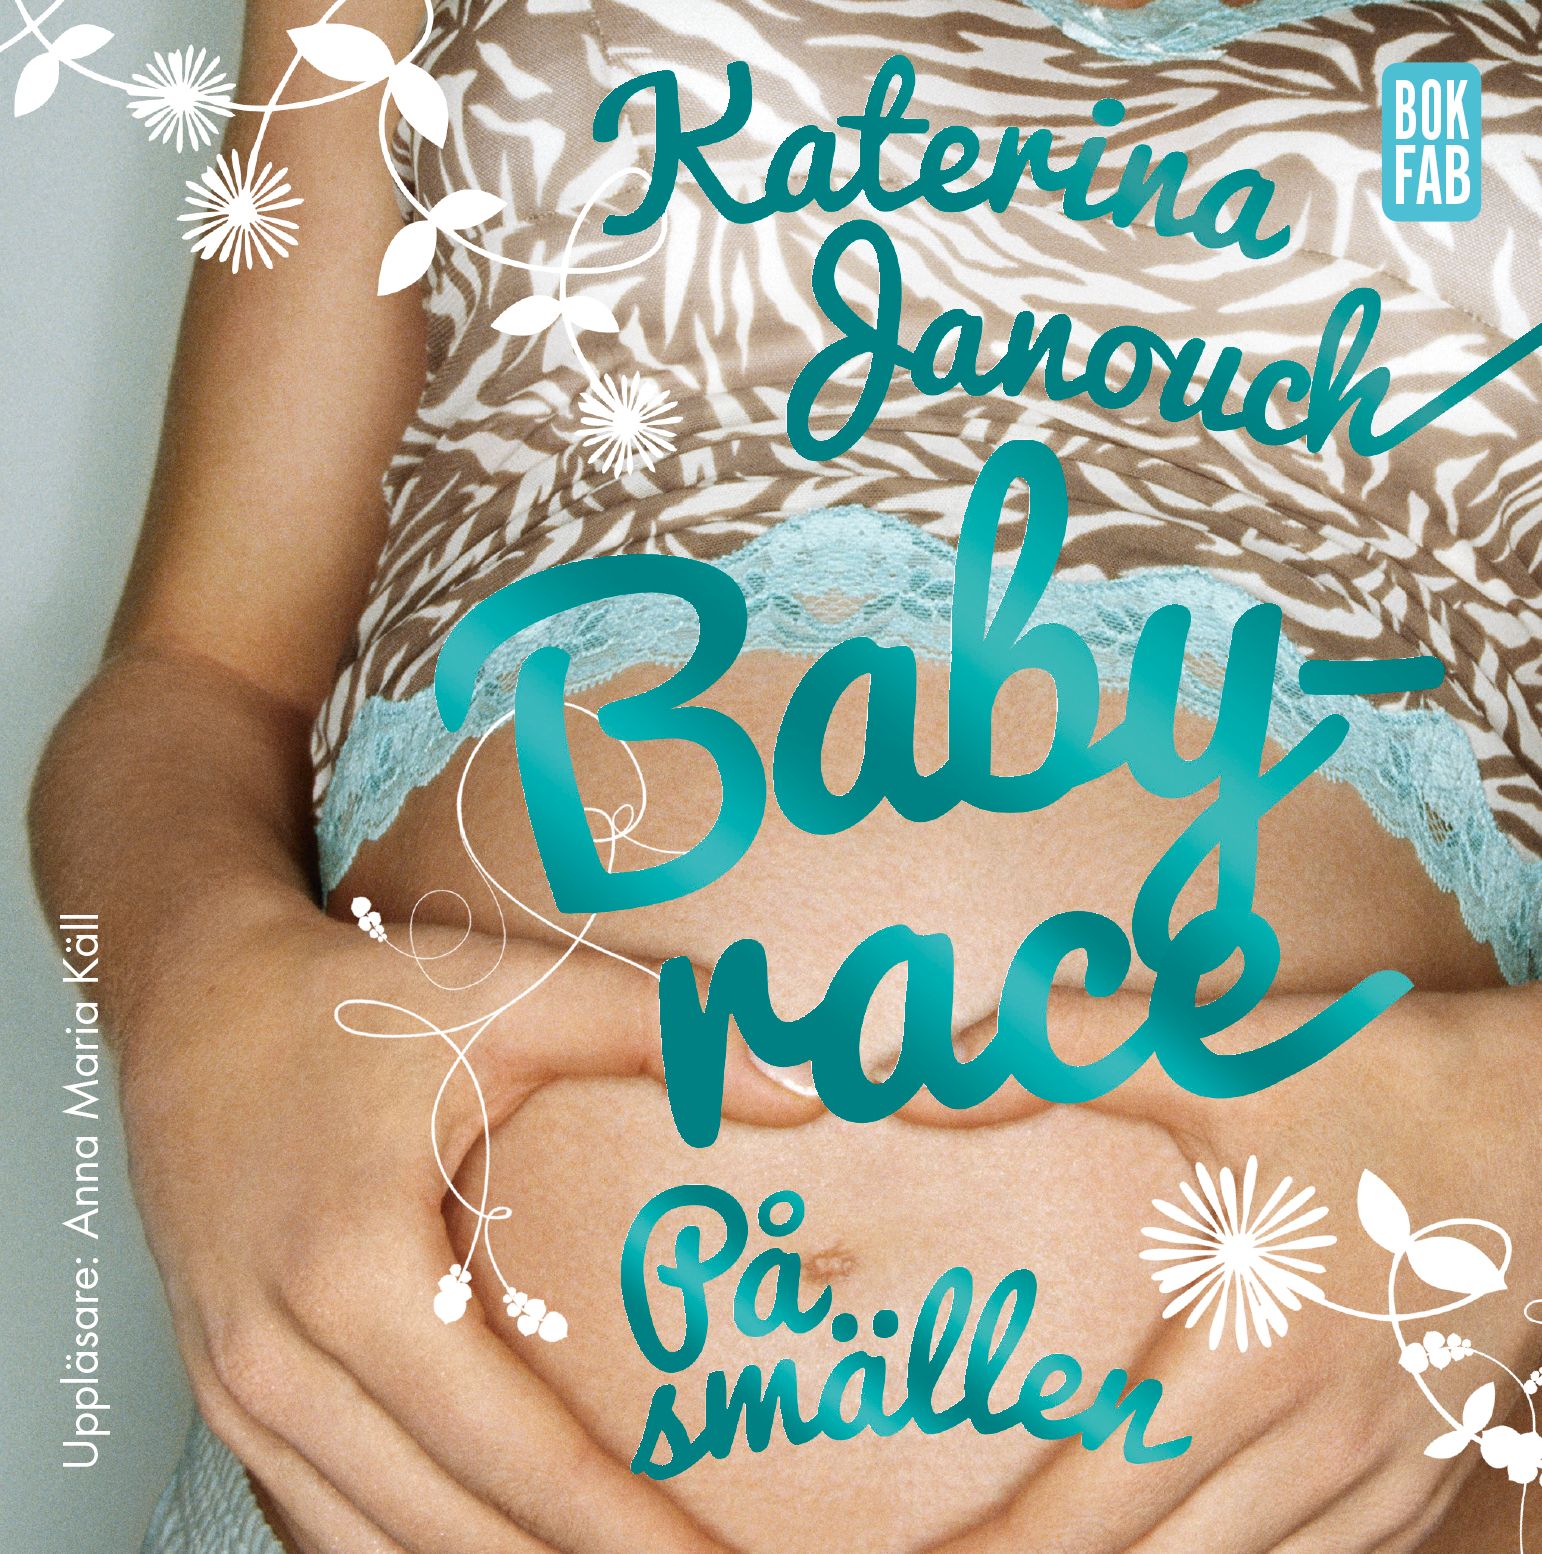 Babyrace : På smällen, ljudbok av Katarina Janouch